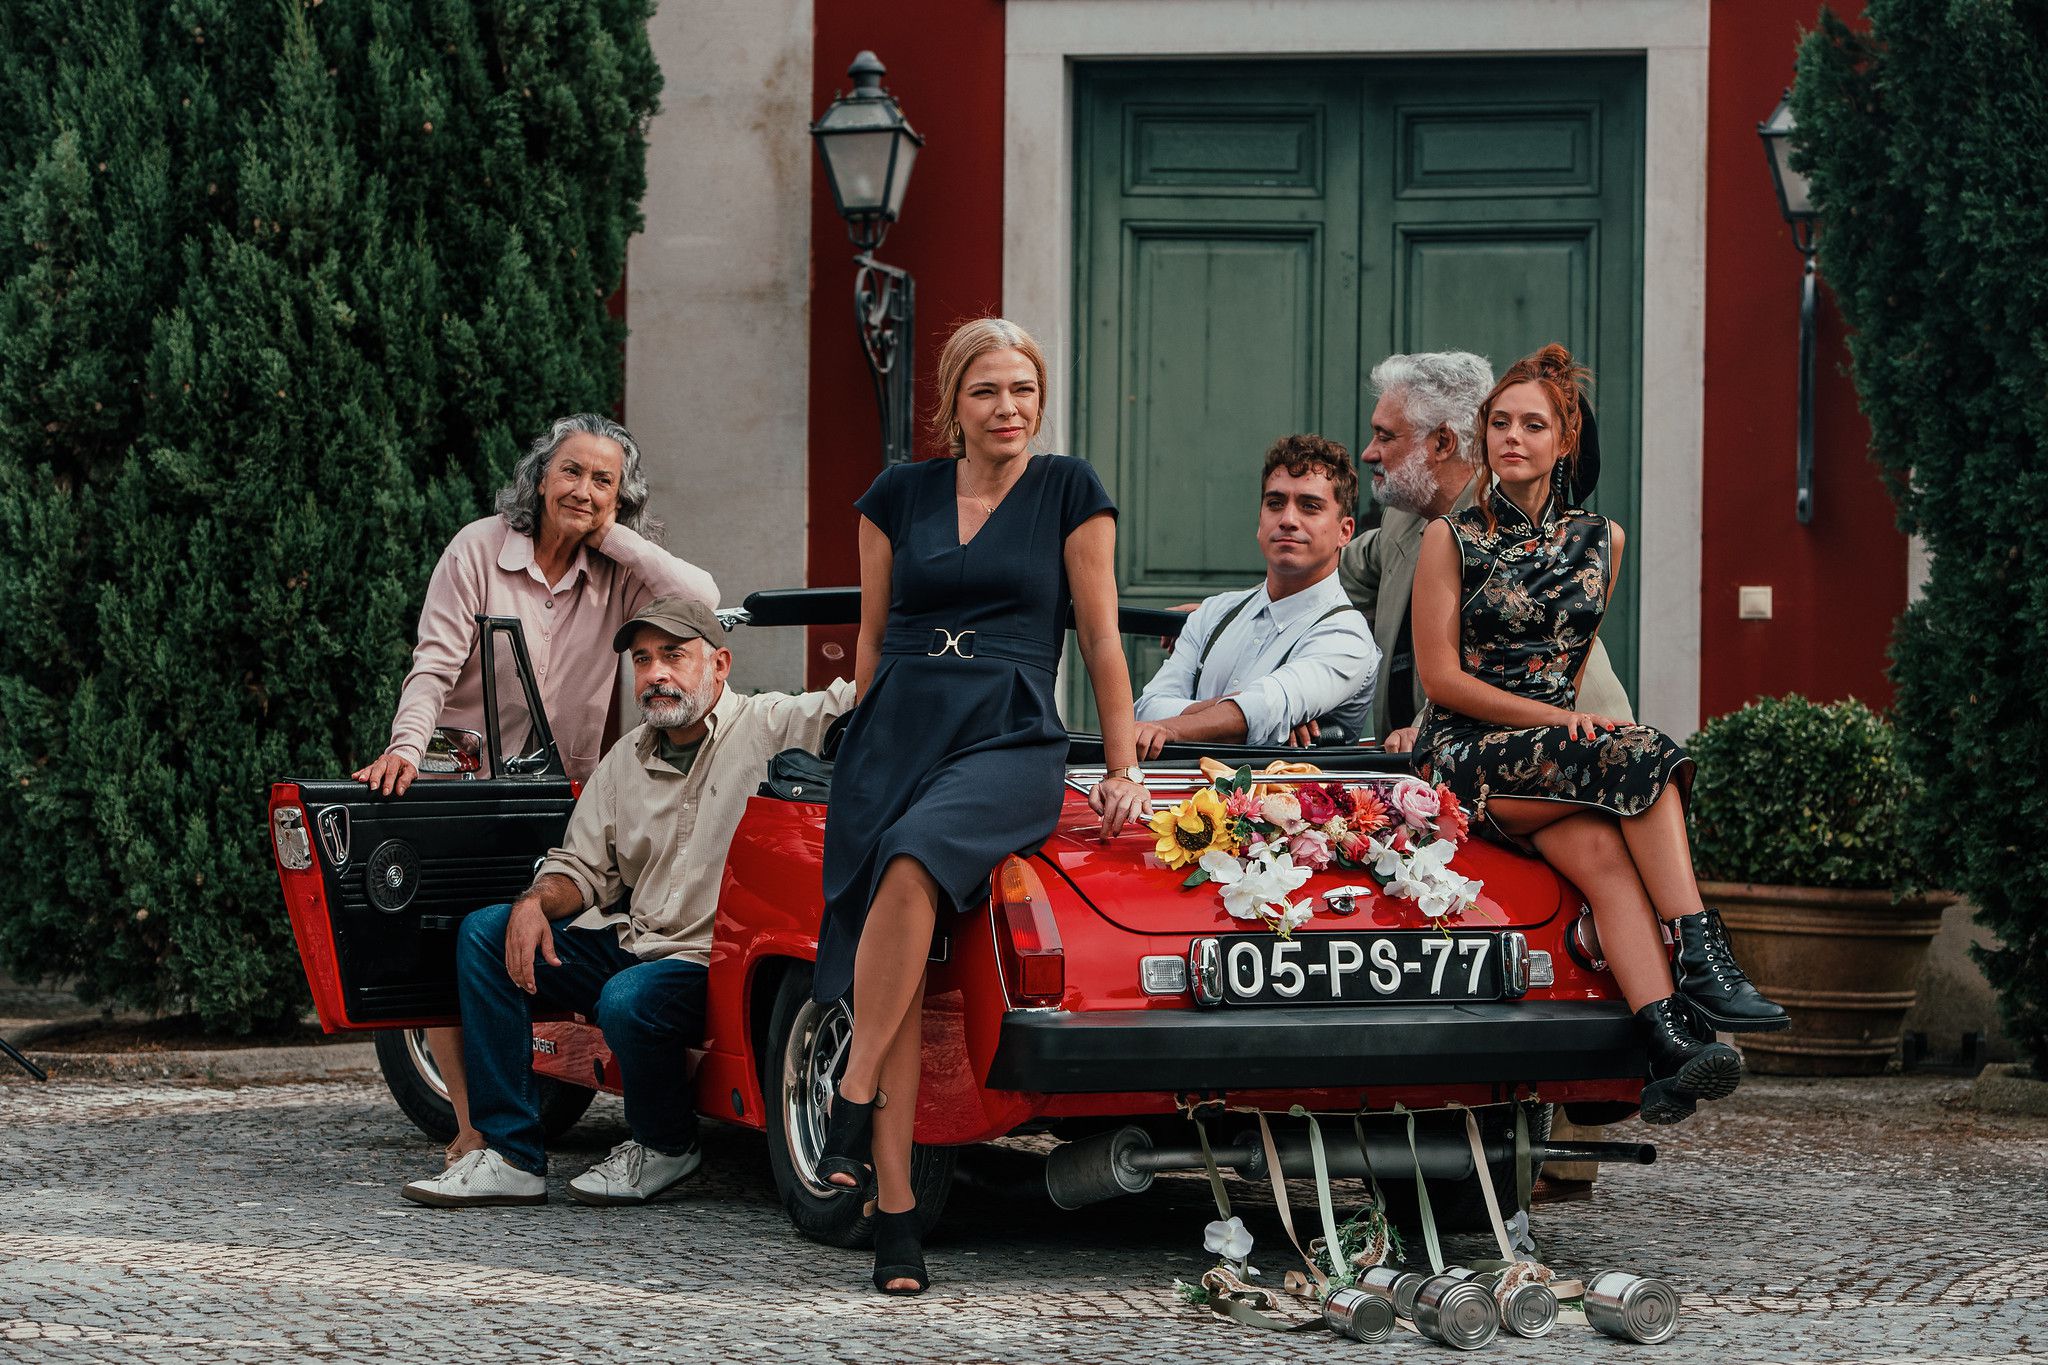 Série portuguesa “Até Que a Vida nos Separe” nomeada para o Prix Europa 2021